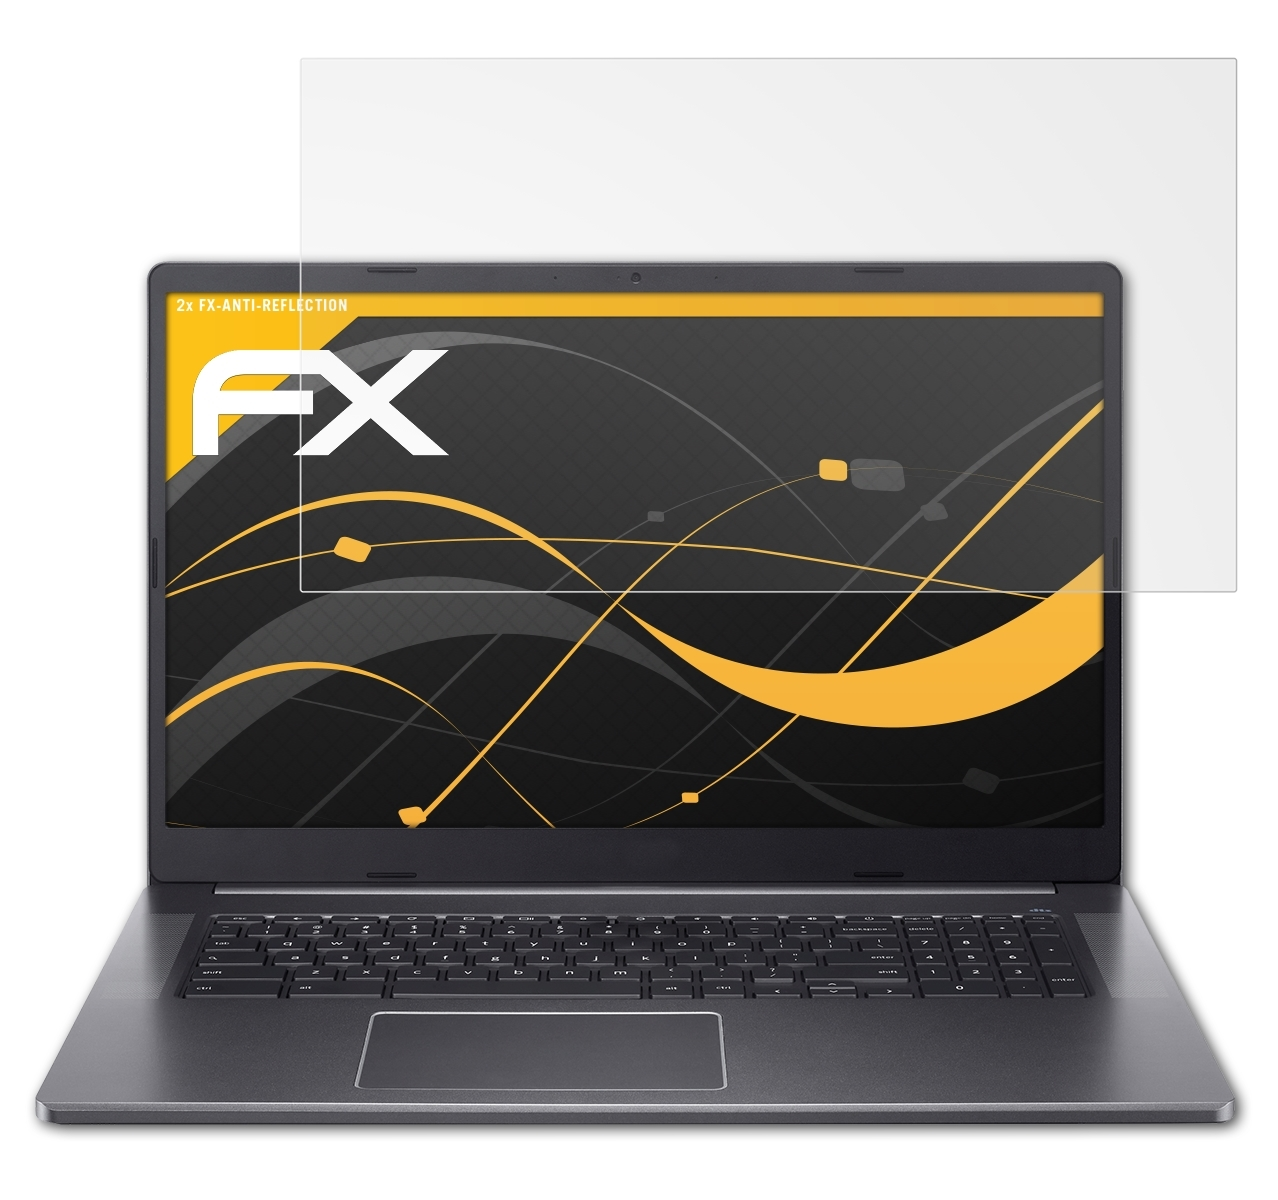 ATFOLIX 2x FX-Antireflex Chromebook 317 Acer Displayschutz(für (CB317-1H))